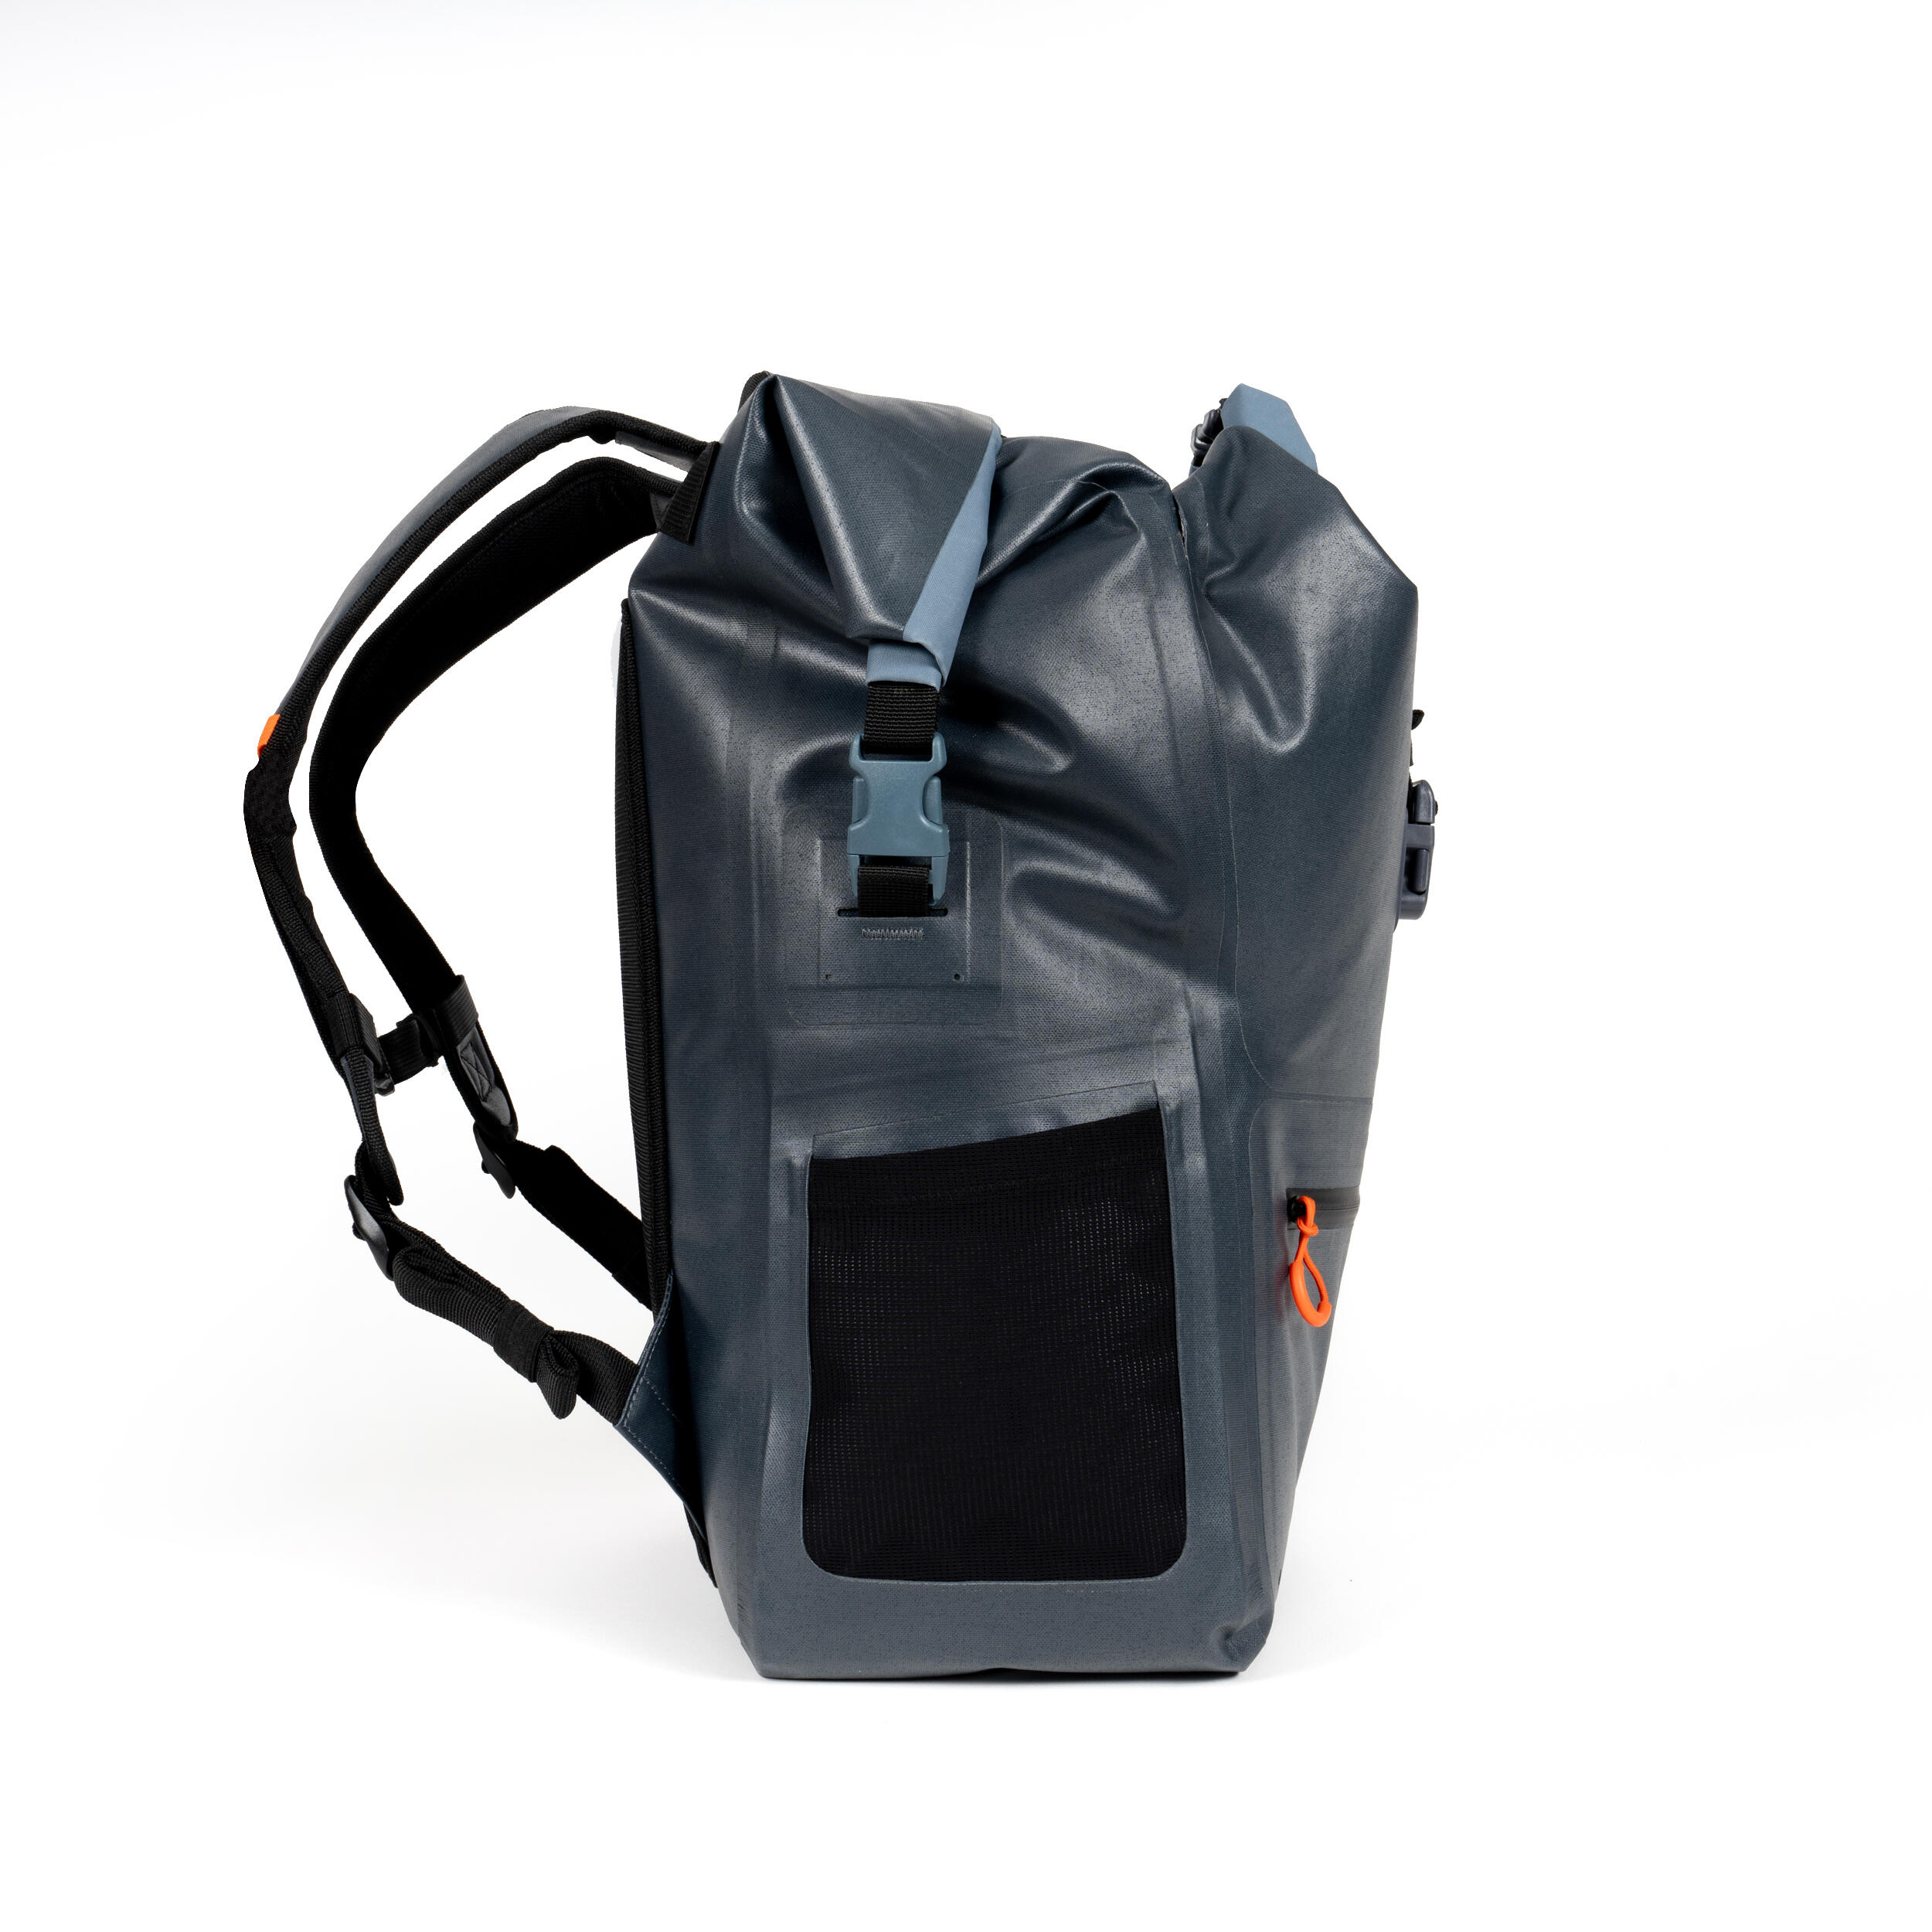 Waterproof backpacks, 2 sections (dry belongings, wet belongings) 35 L. 6/17